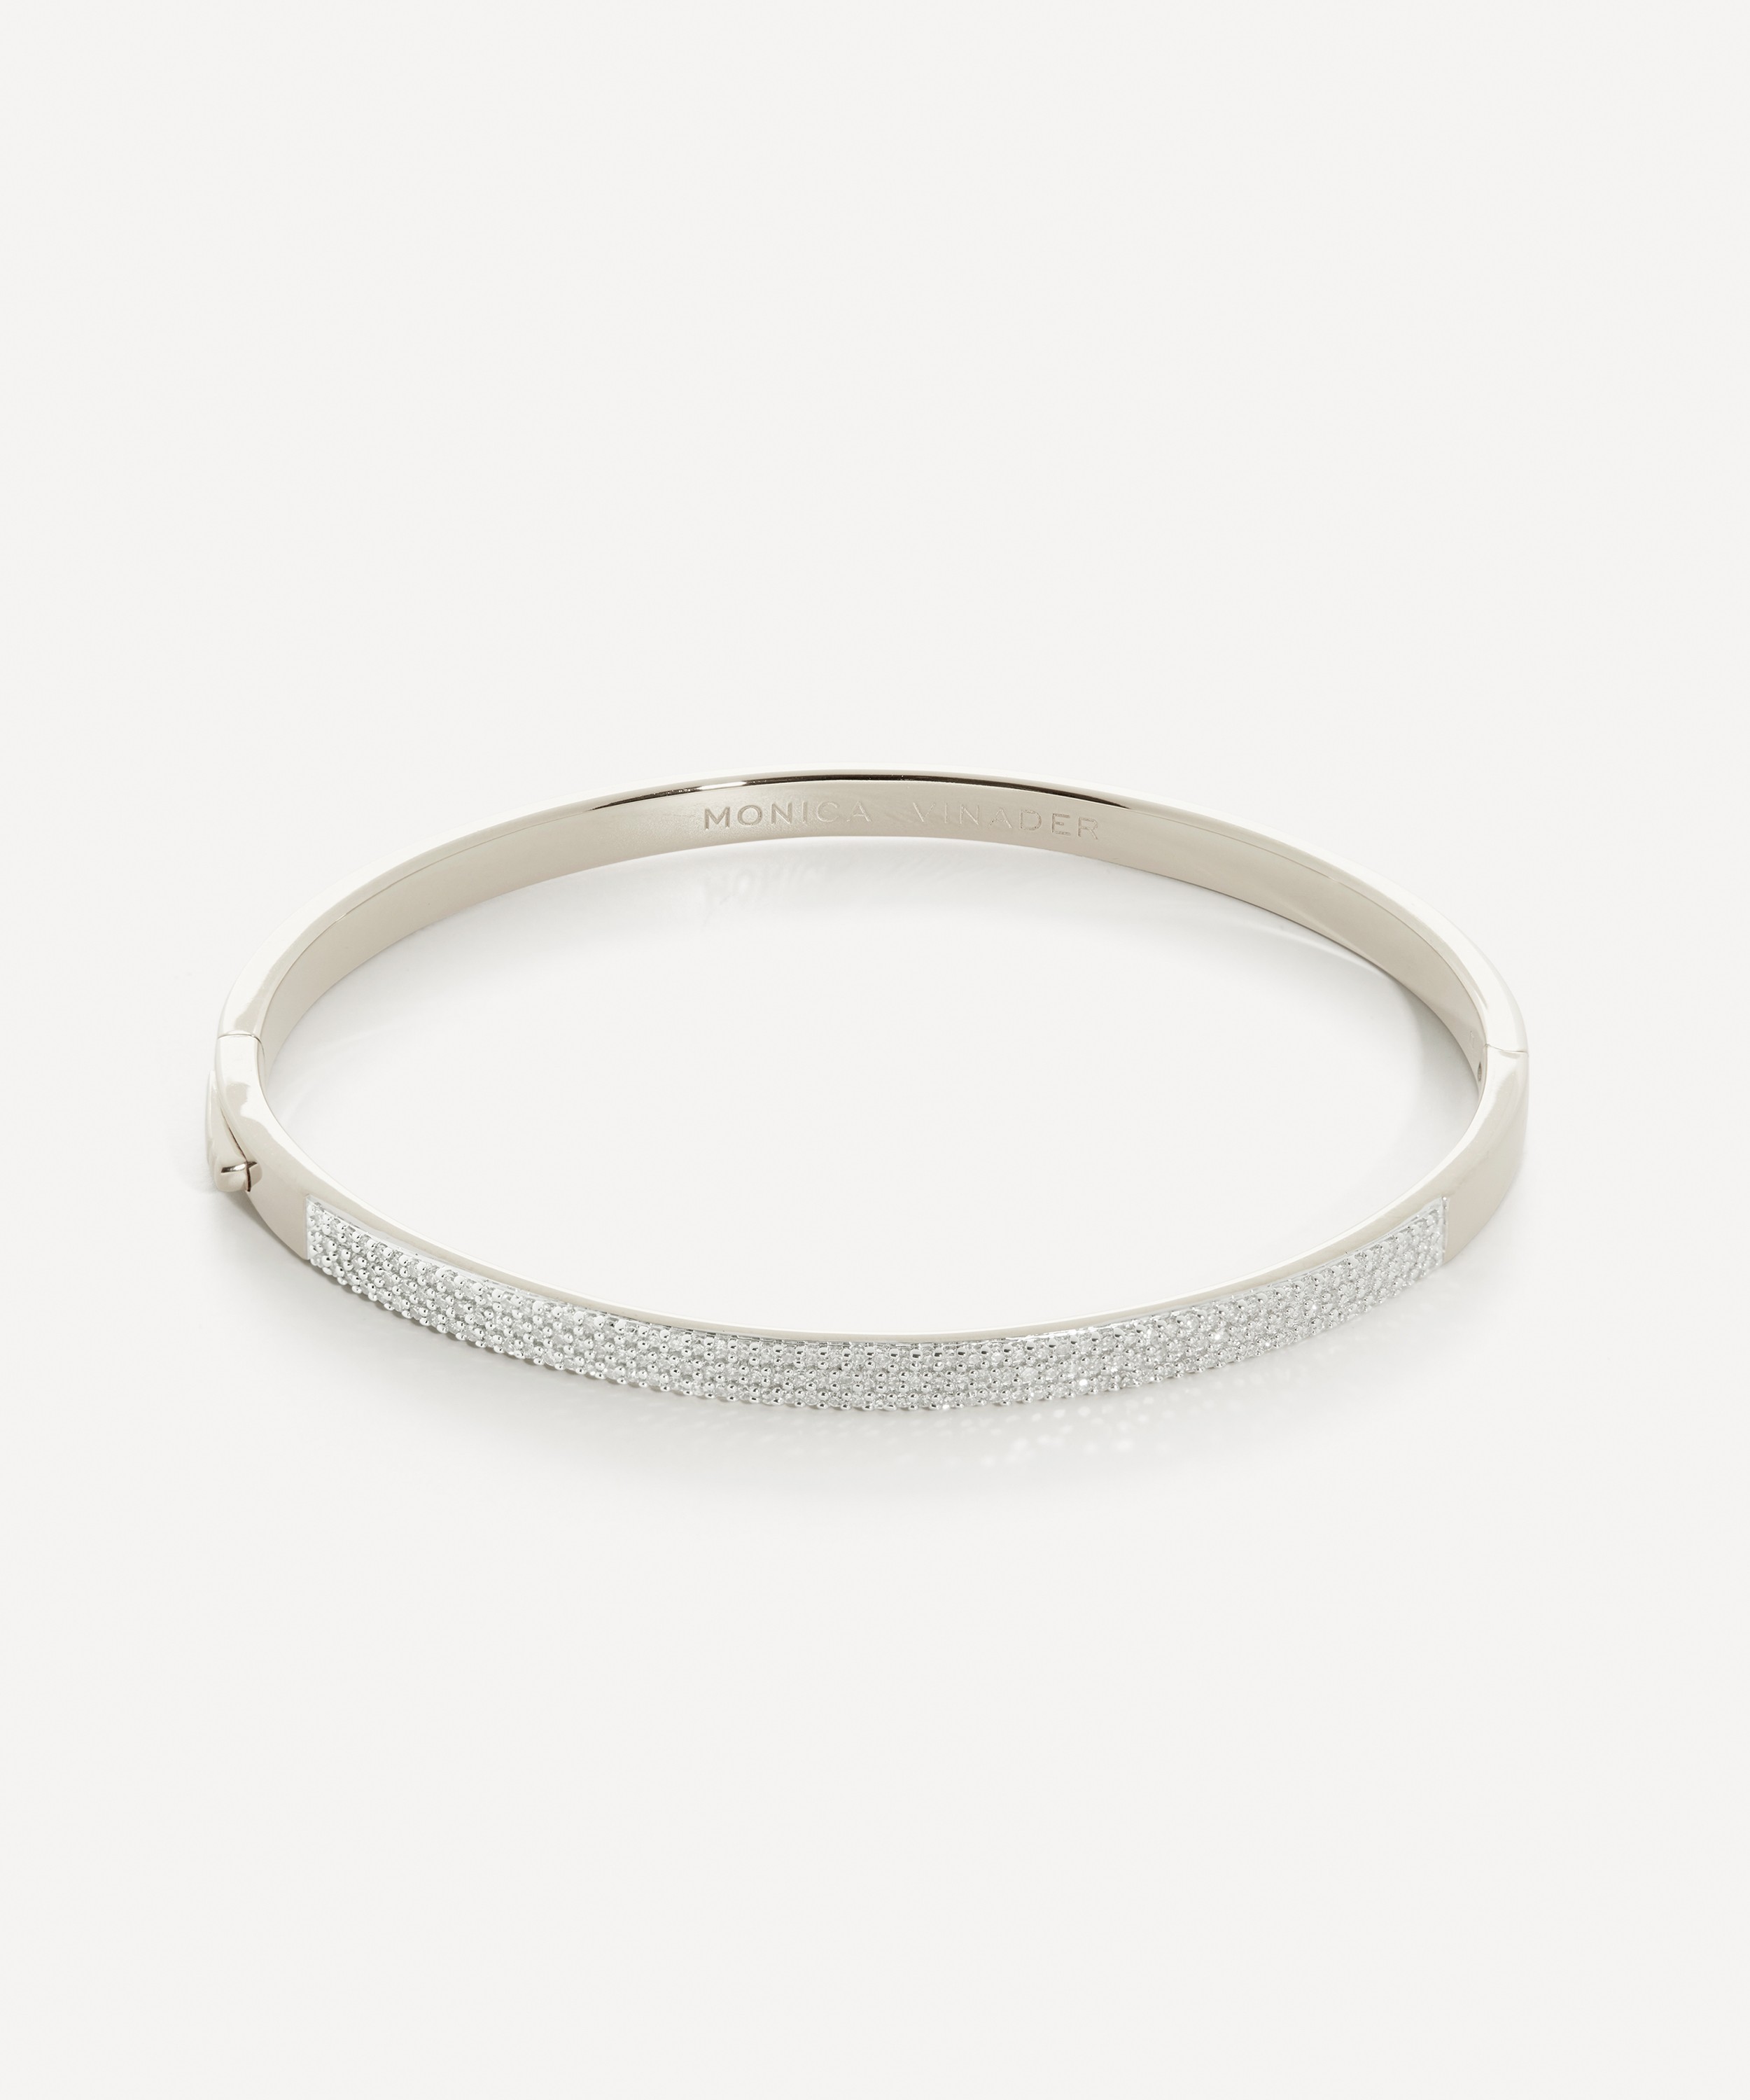 Monica Vinader - Sterling Silver Diamond Pave’ Essential Bangle Bracelet